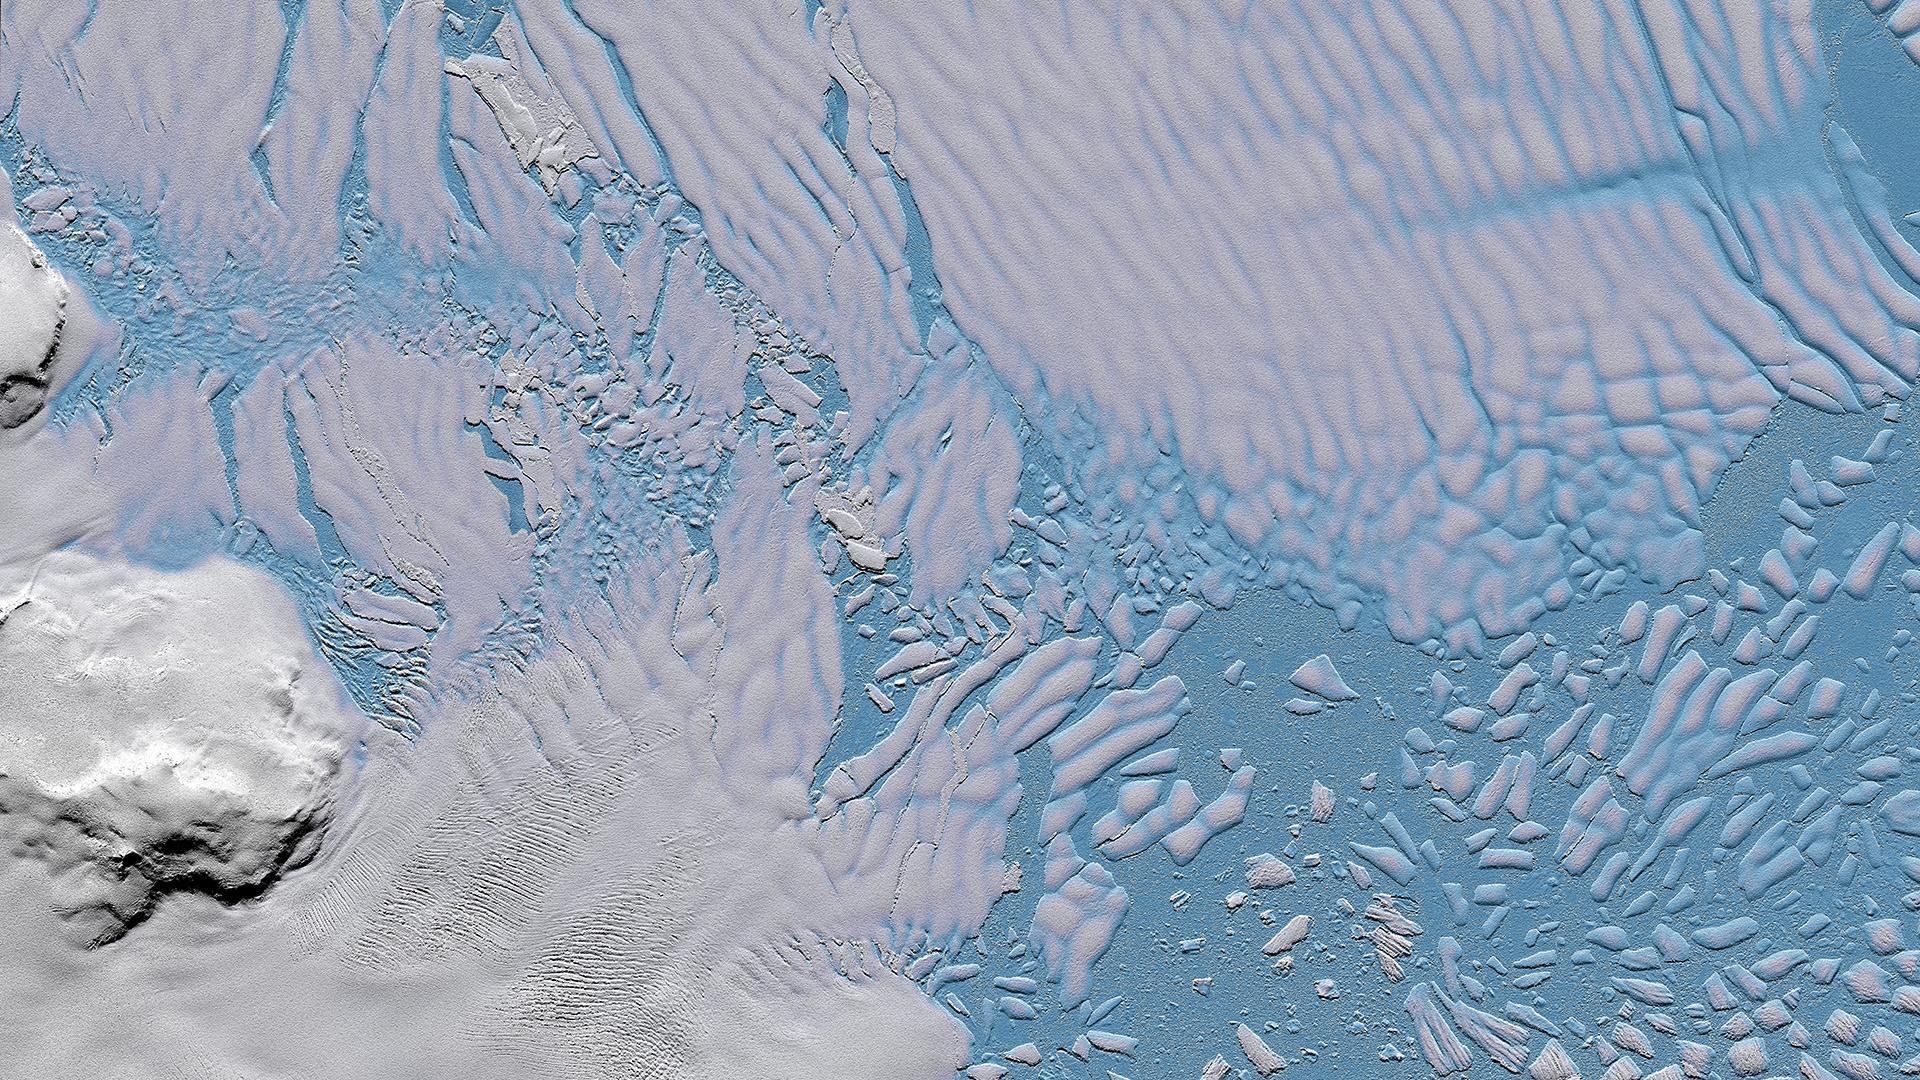 Tan­DEM-X el­e­va­tion mod­el – brit­tle ice shelf of the Thwait­es Glacier